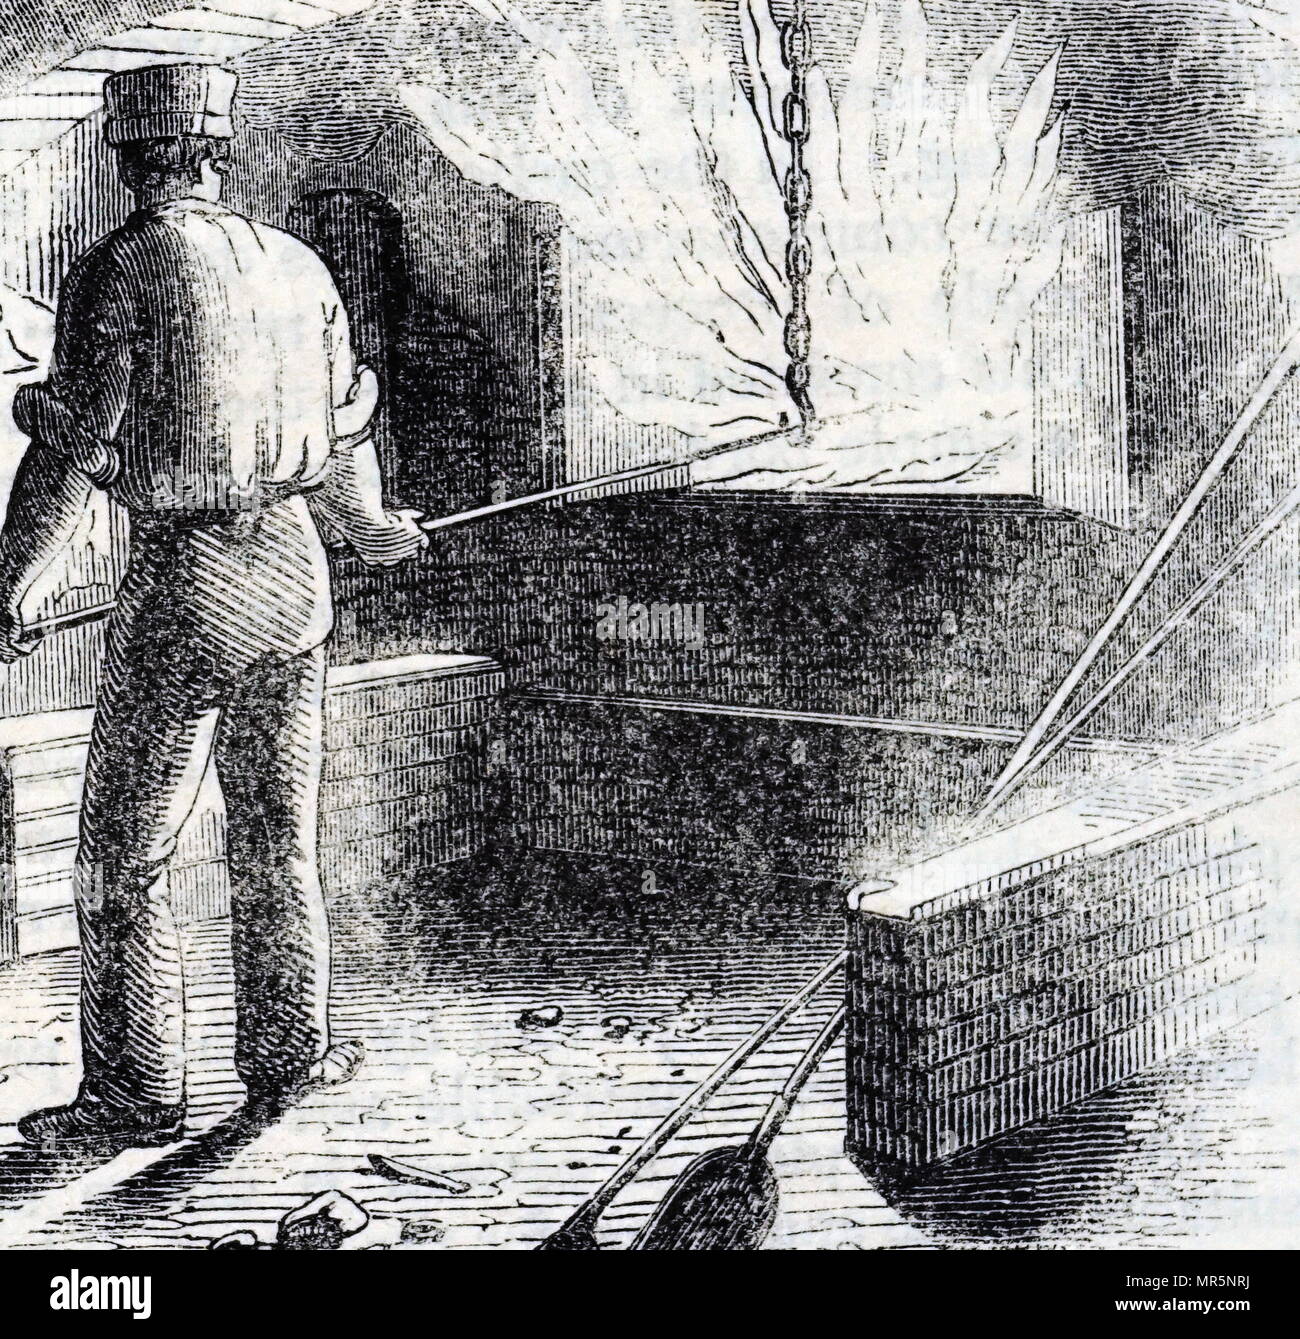 Kupferstich mit der Darstellung der Rühren von Blei in einem Ofen Rot zu produzieren - führen, einen Oxid von Blei als Pigment verwendet. Vom 19. Jahrhundert Stockfoto